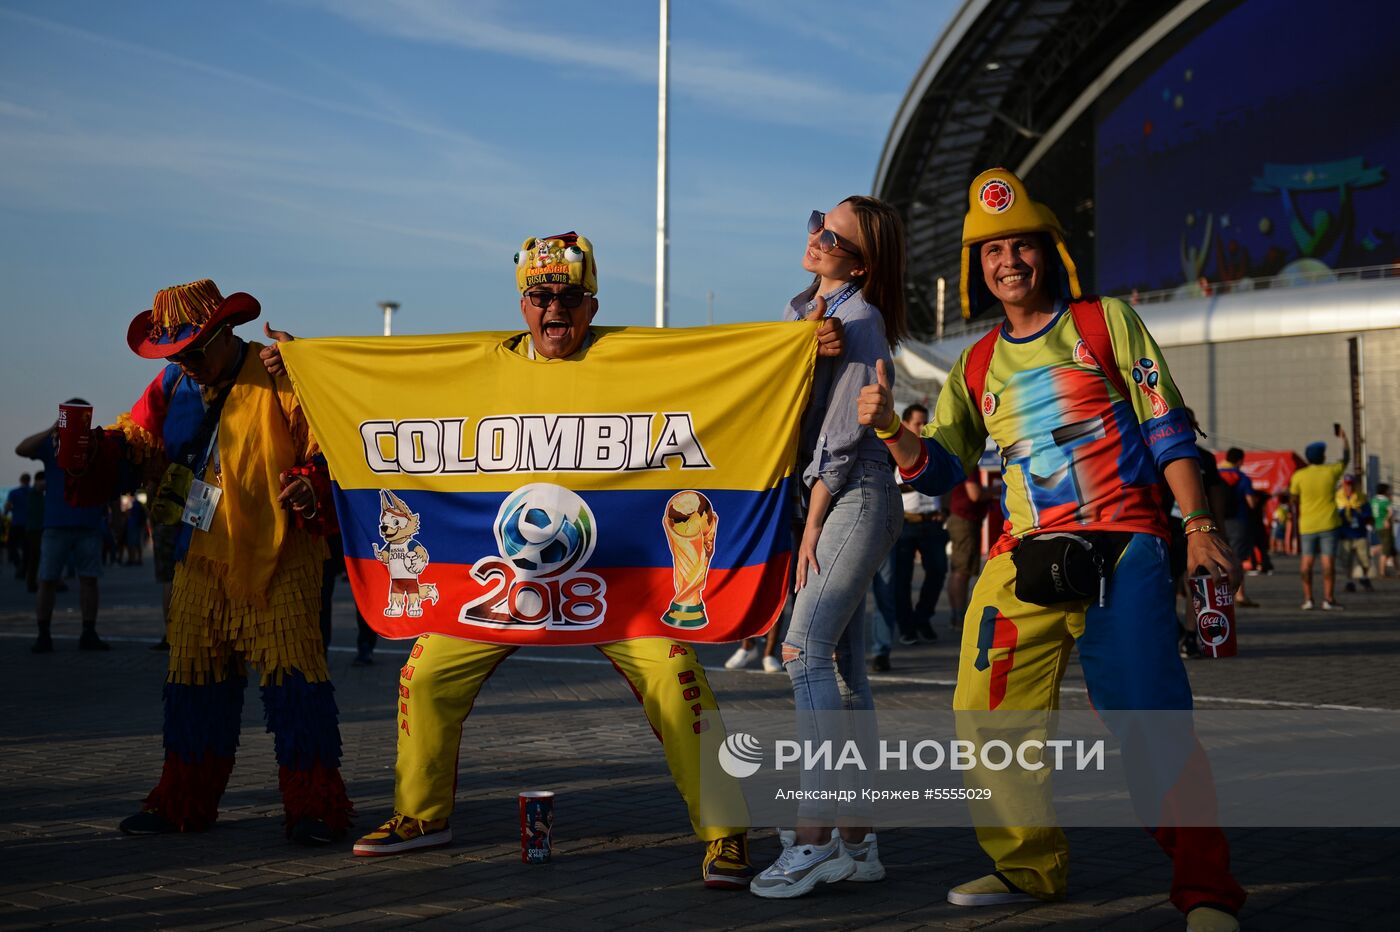 Болельщики перед матчем ЧМ-2018 по футболу между сборными Польши и Колумбии